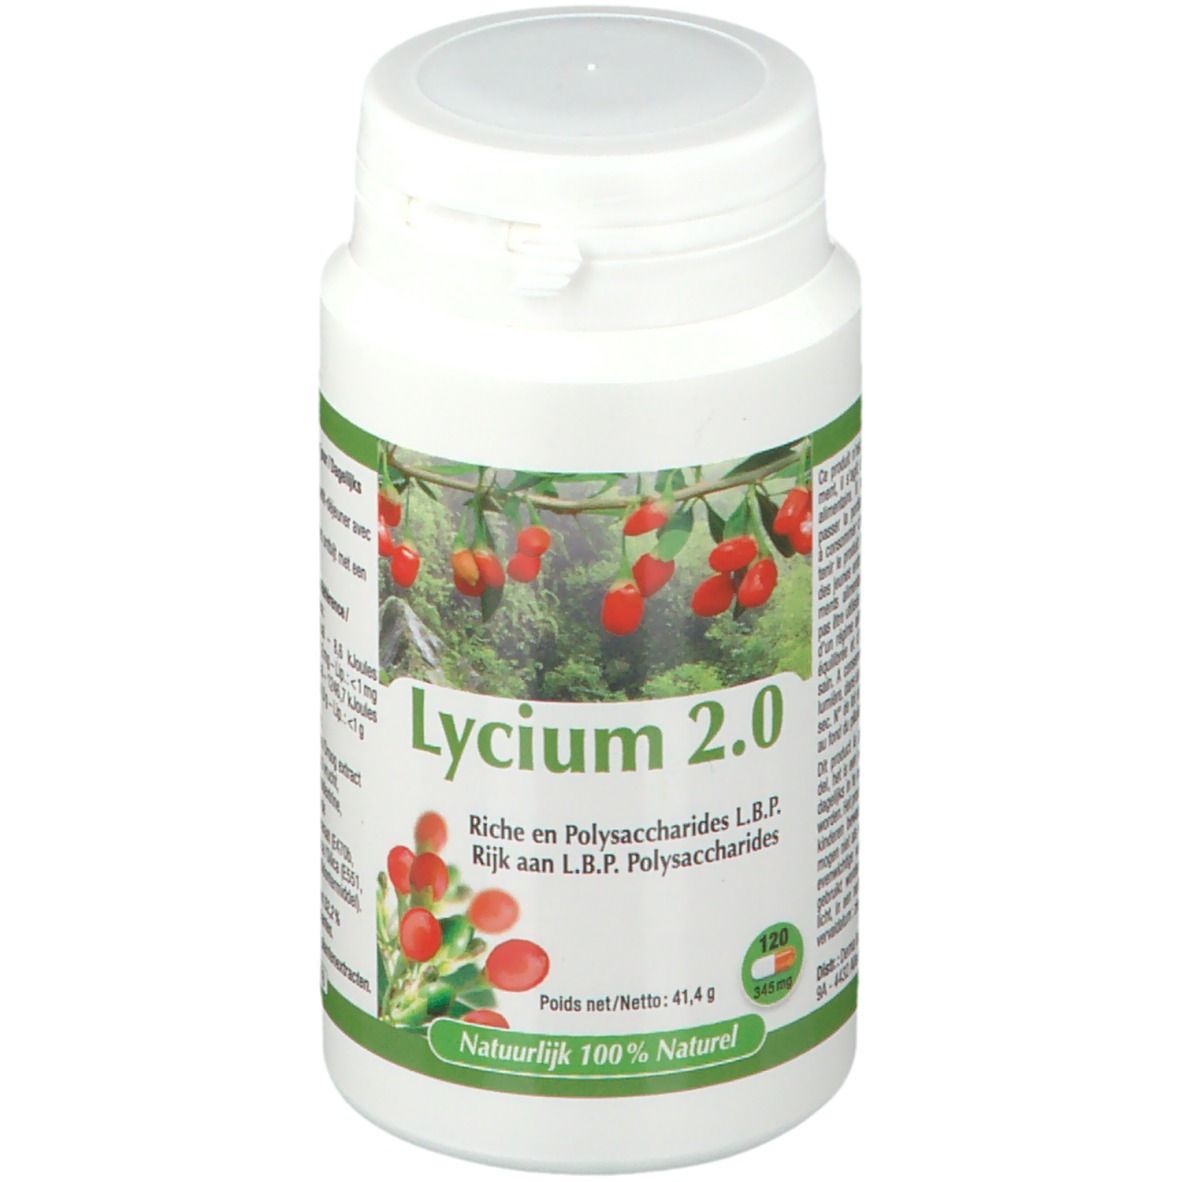 Lycium 2.0